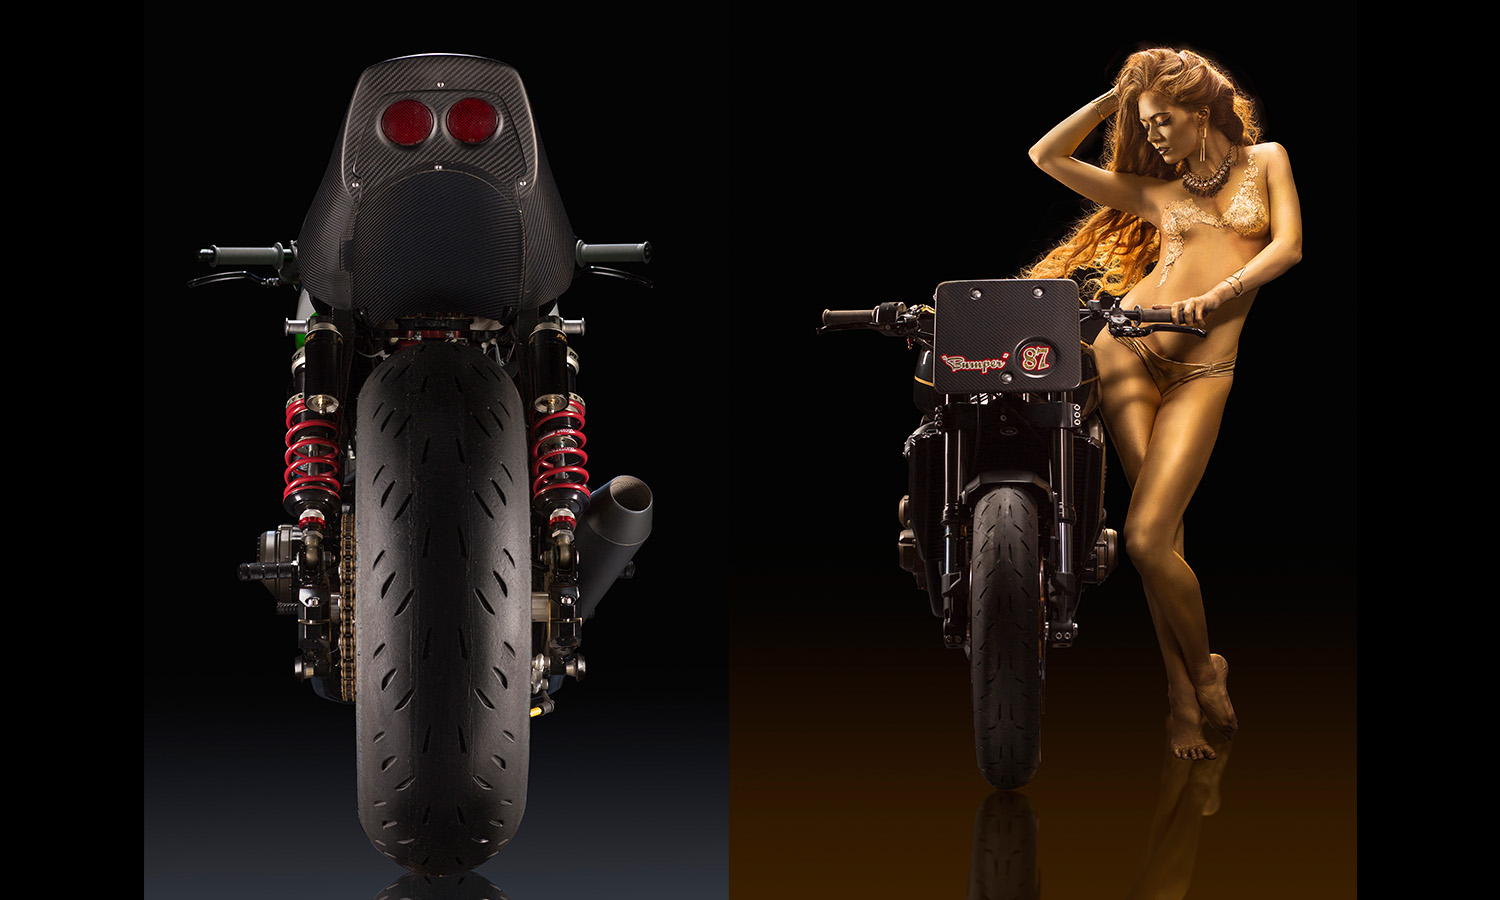 babe naked superbike Product